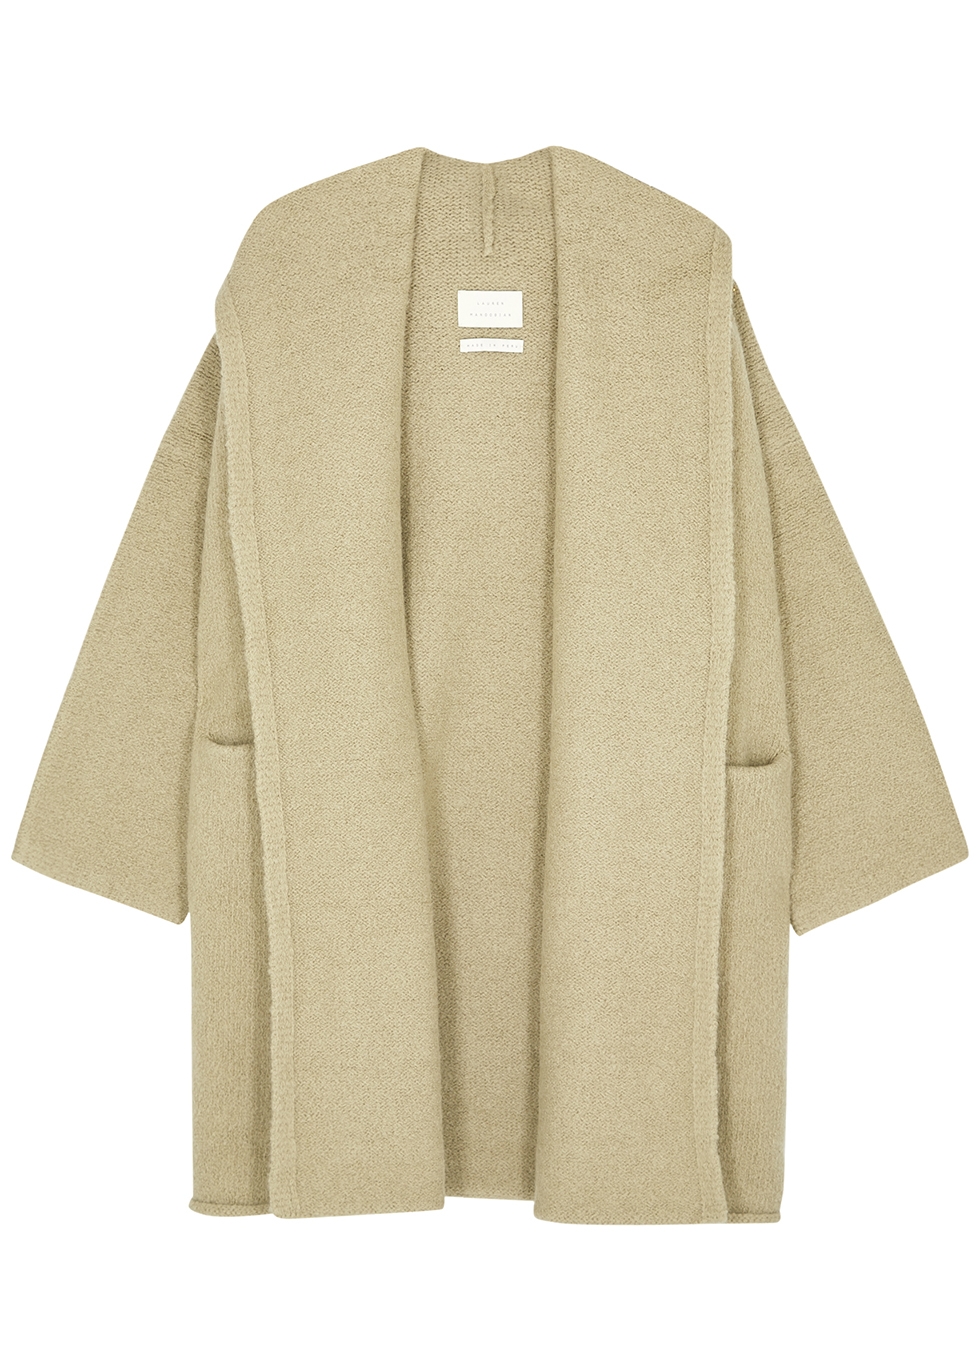 Lauren Manoogian Capote sand alpaca-blend coat